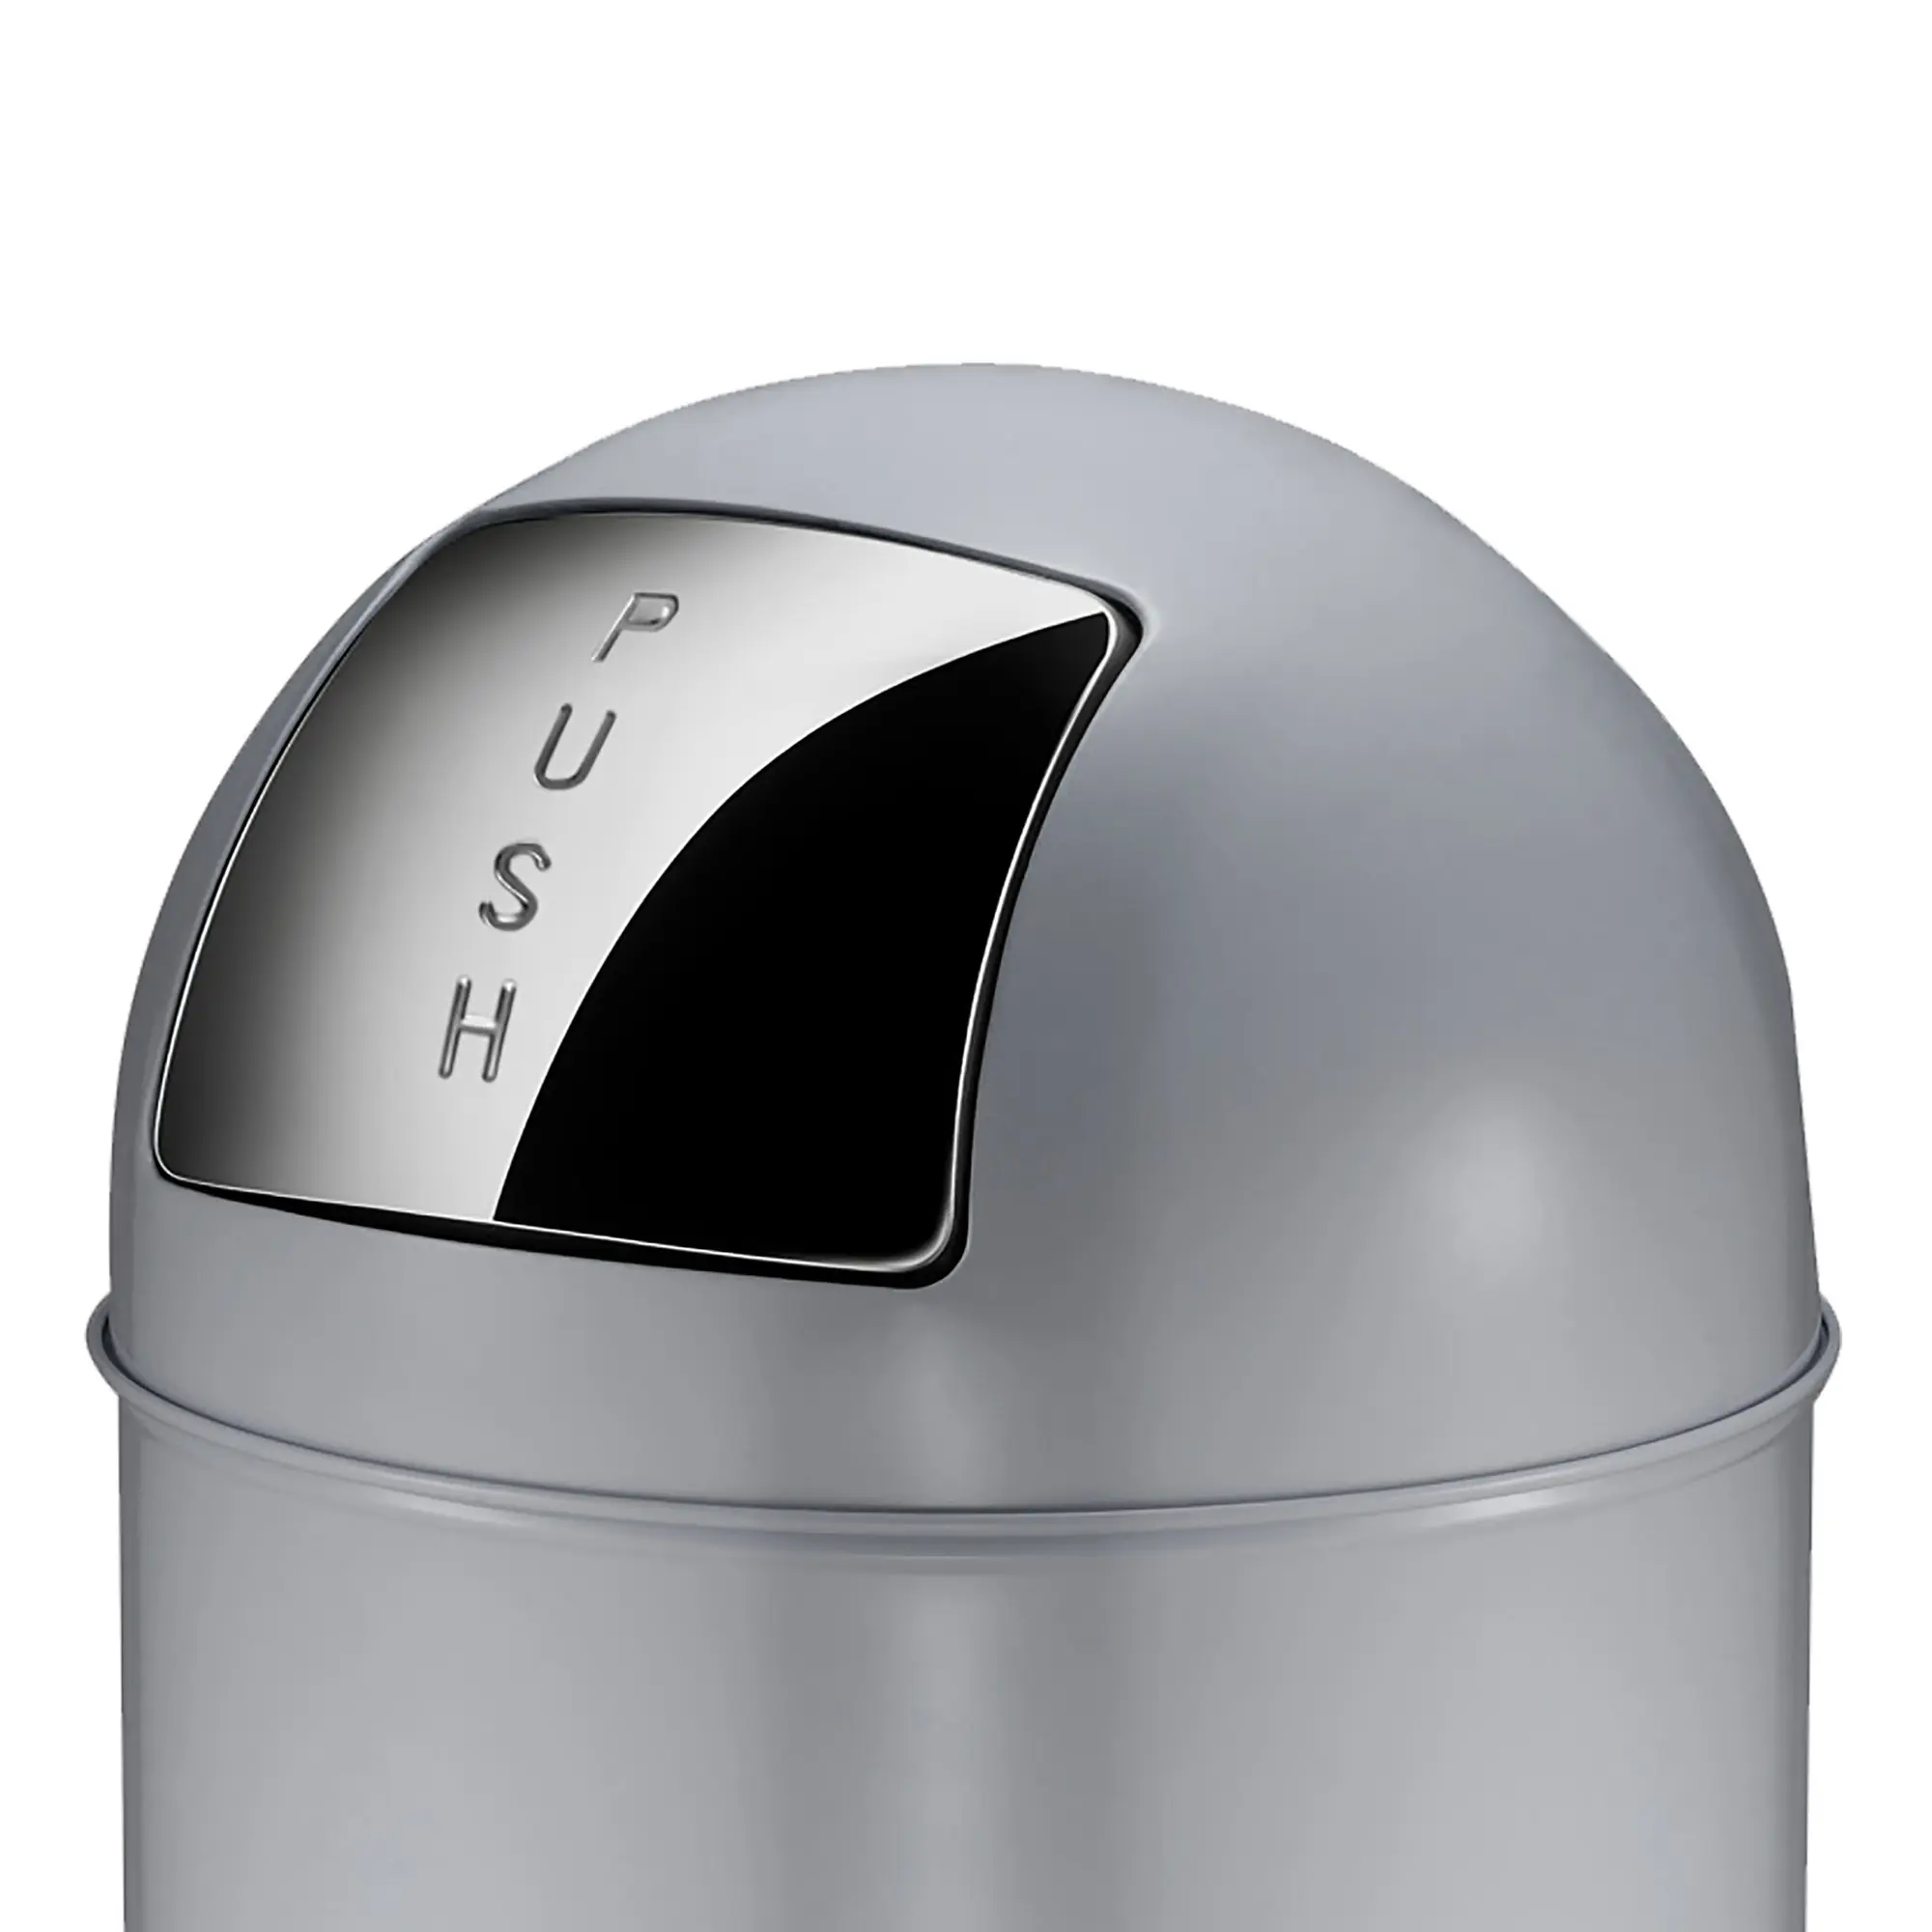 EKO Pushcan Abfallbehälter 40 Liter Edelstahl matt Pushklappe 31022182